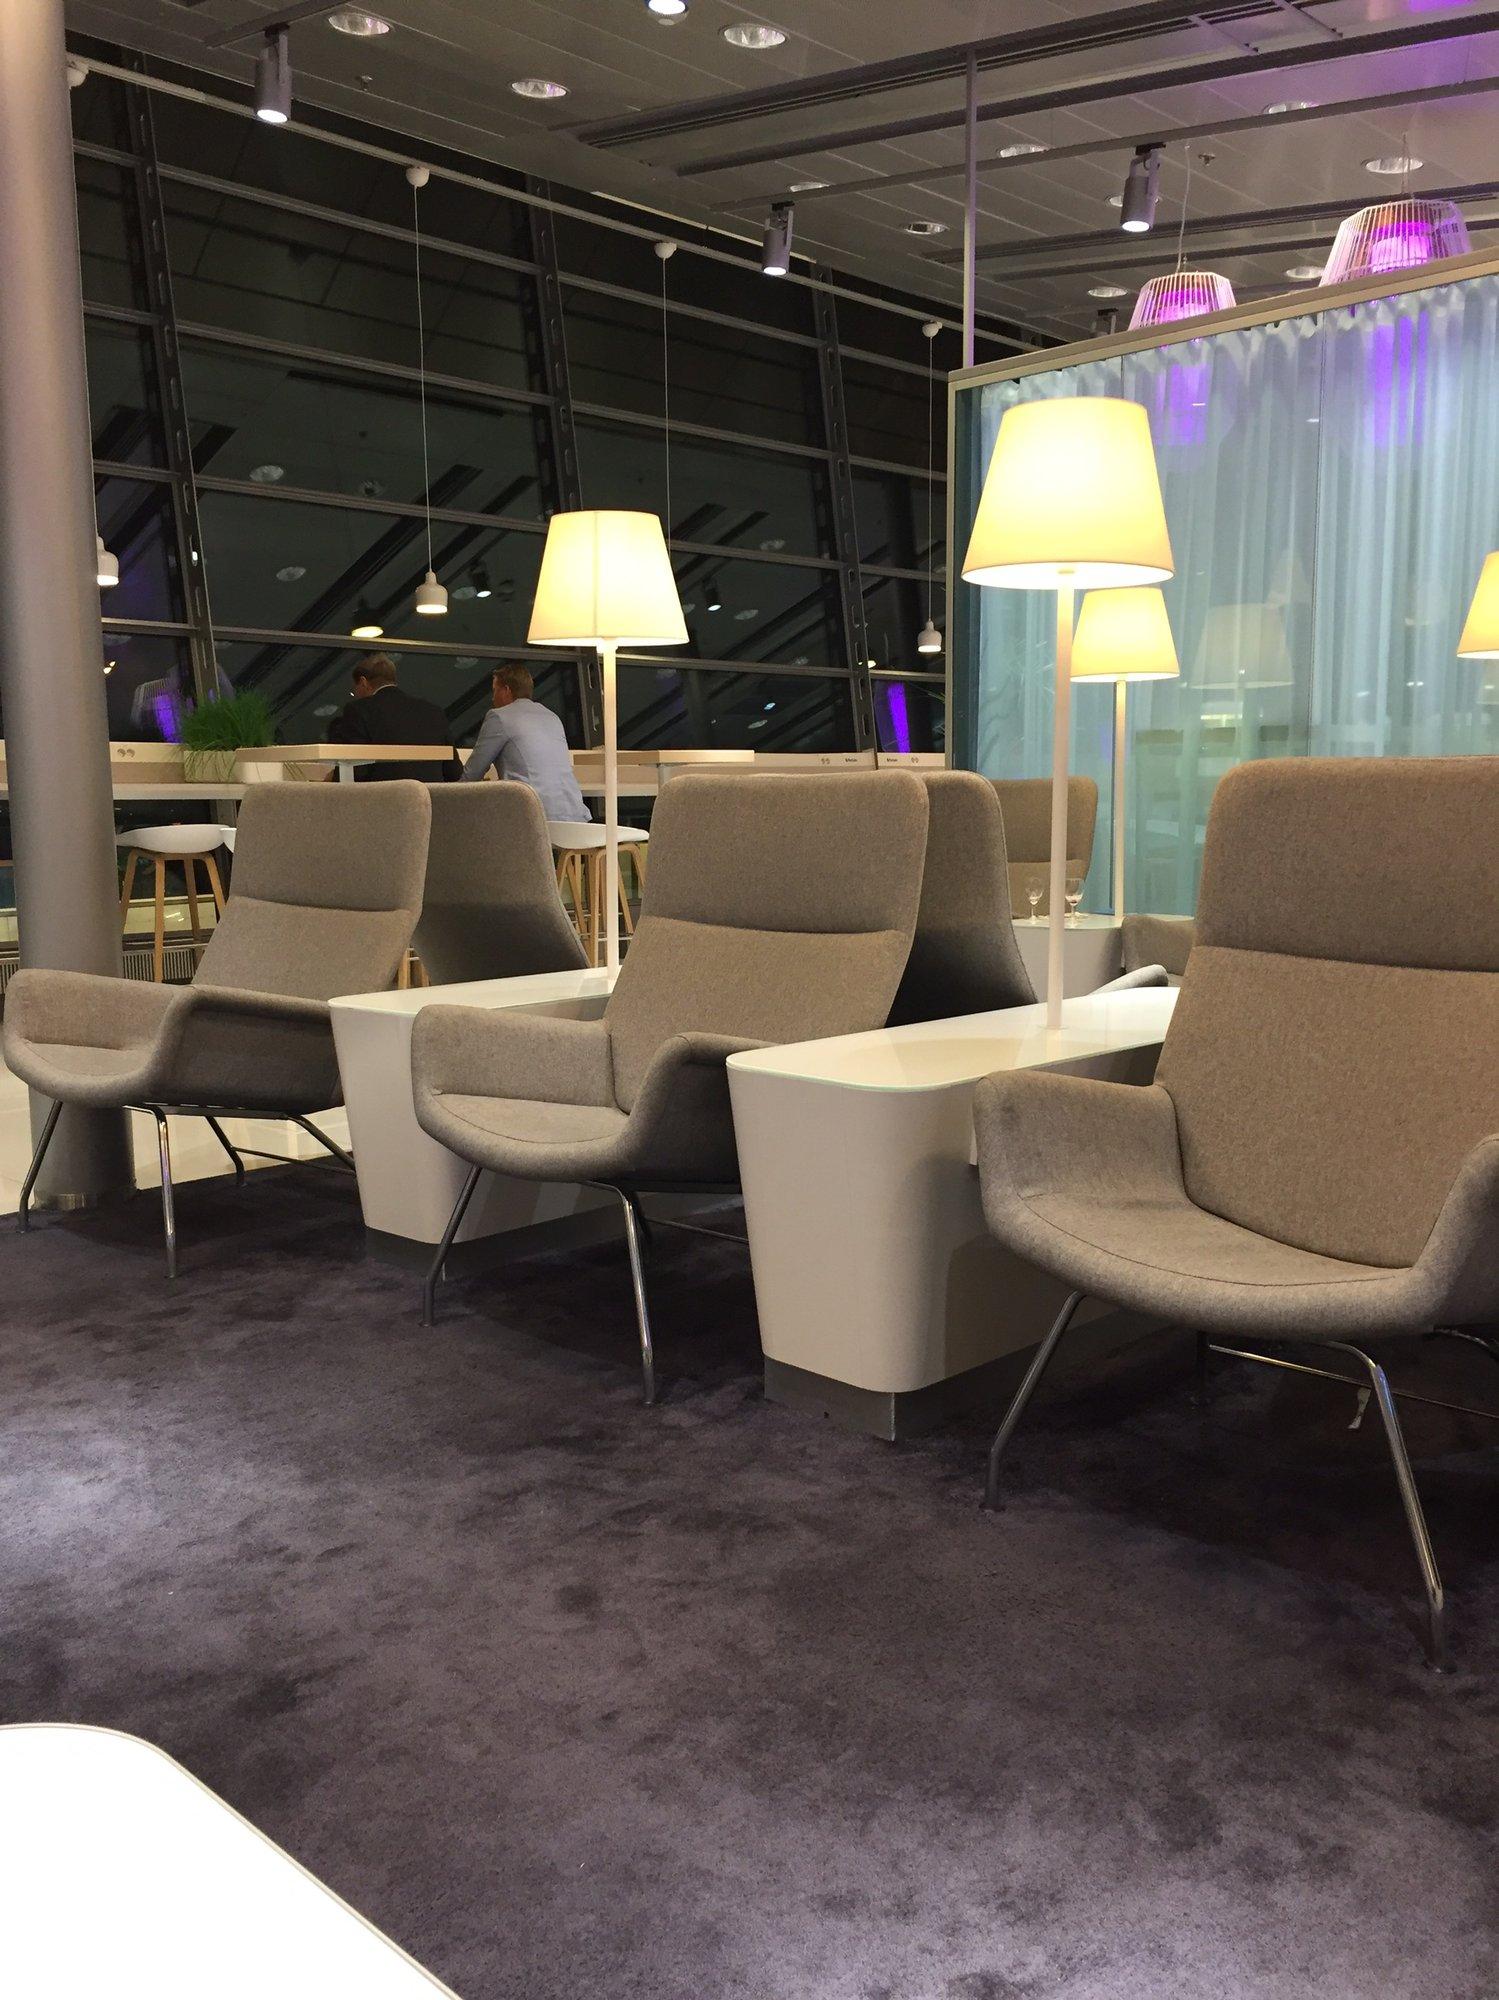 Finnair Lounge image 25 of 38